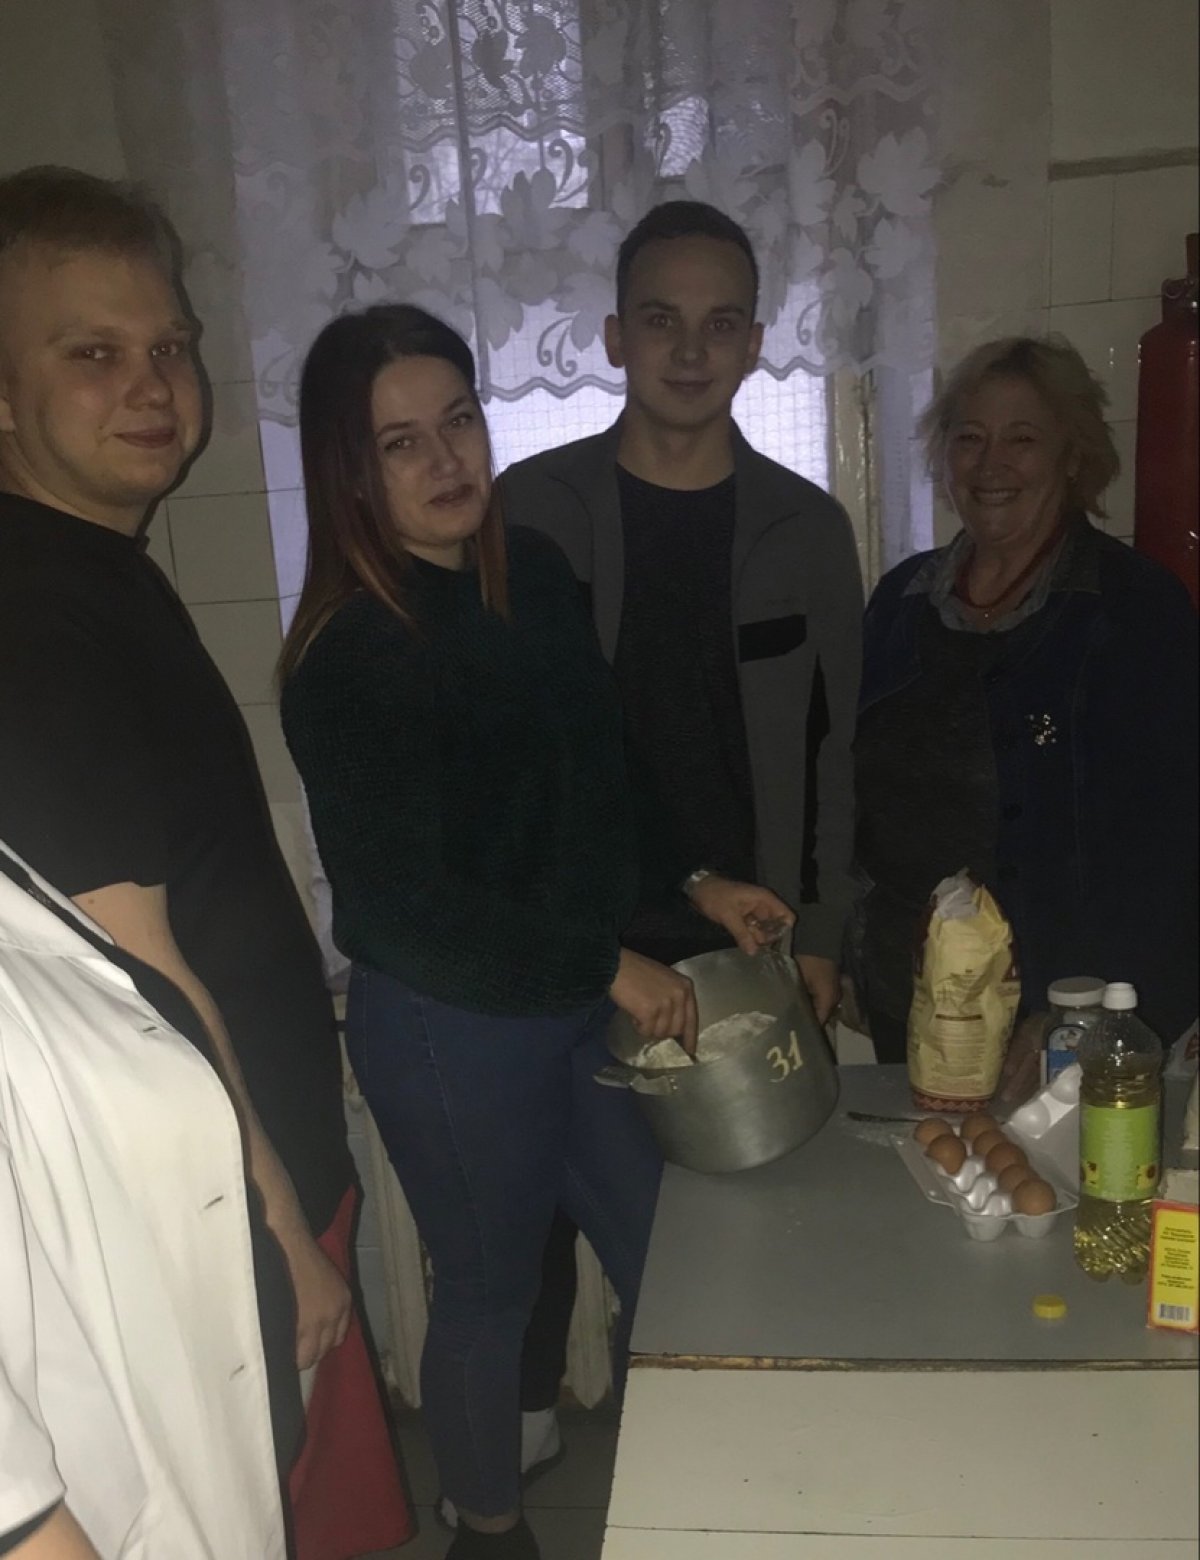 5 декабря 2019 года в студенческом общежитии филиала СамГУПС в г. Нижнем Новгороде прошёл практический мастер - класс по приготовлению вкусной и здоровой пищи